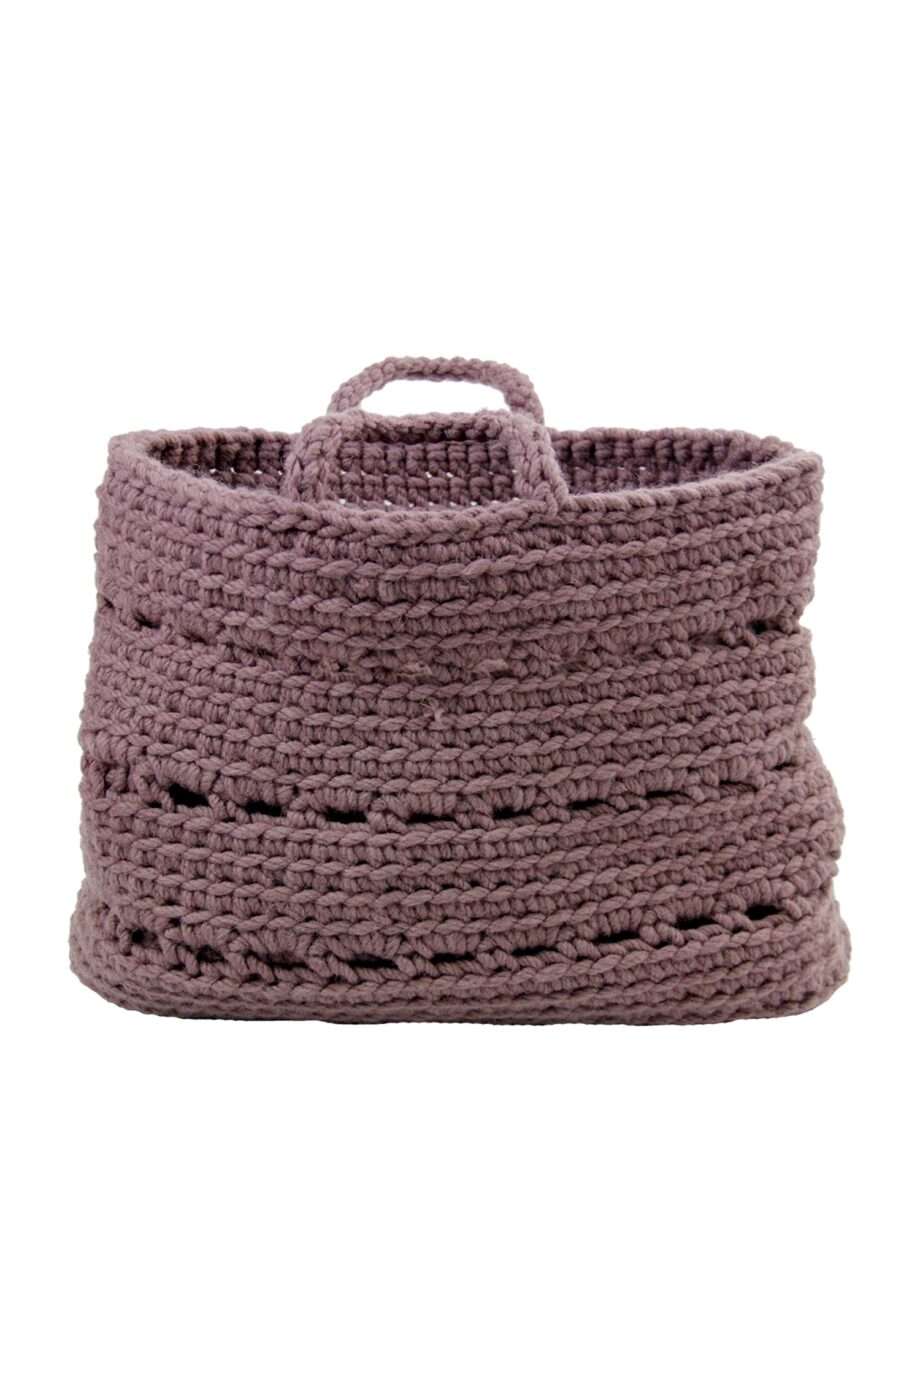 basic violet crochet woolen basket xlarge